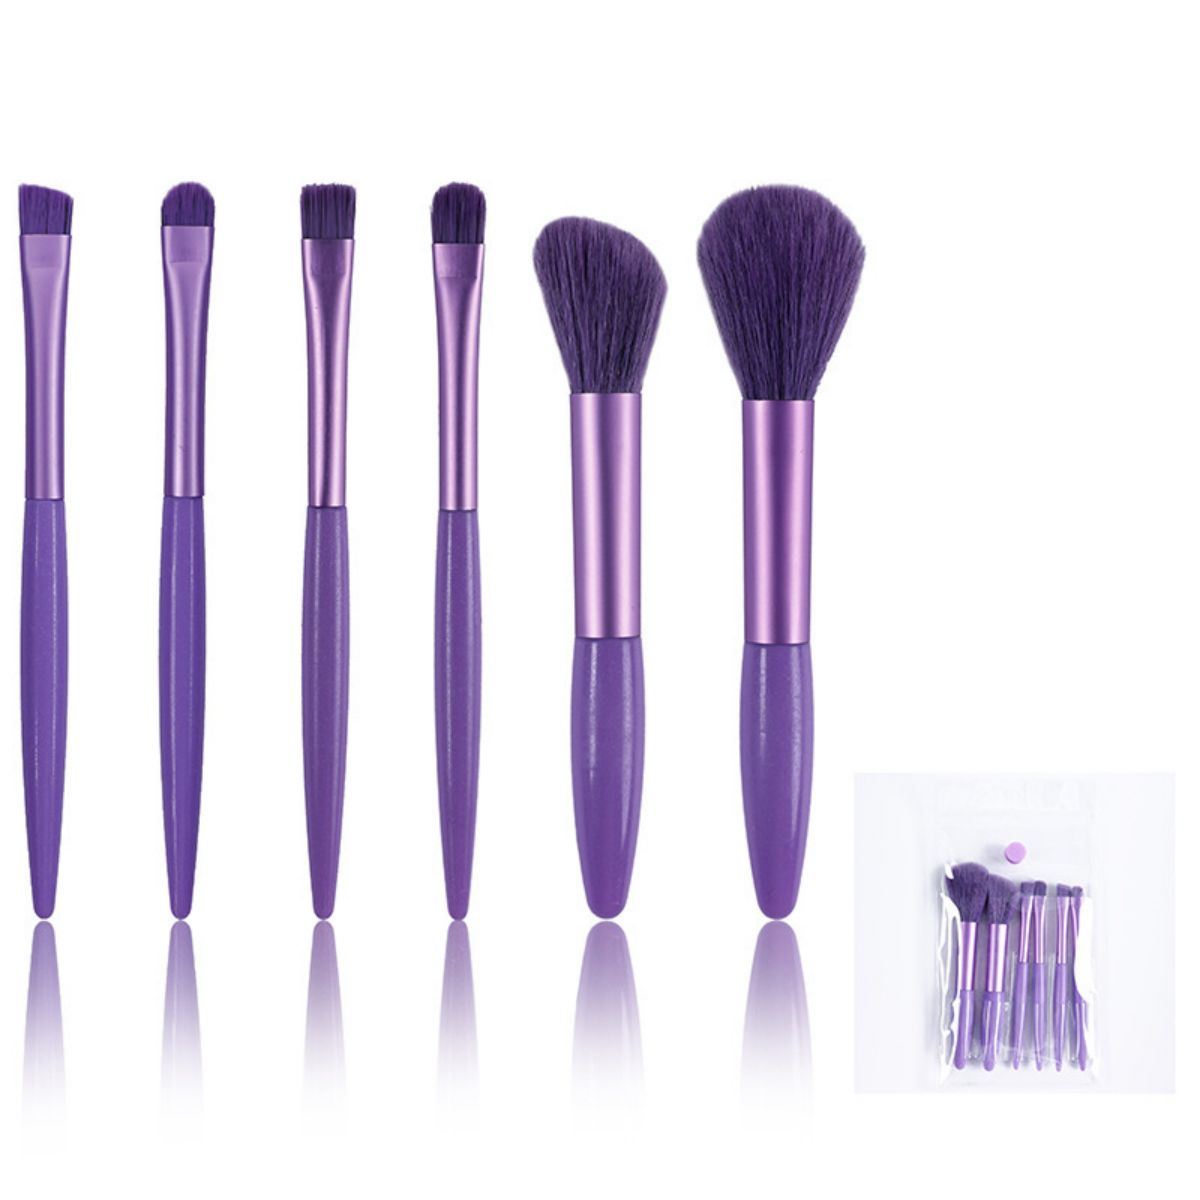 6 Piece Soft Hair Makeup Brush Set Portable Eyeshadow Brush Blush Brush Full Set of Makeup Tools